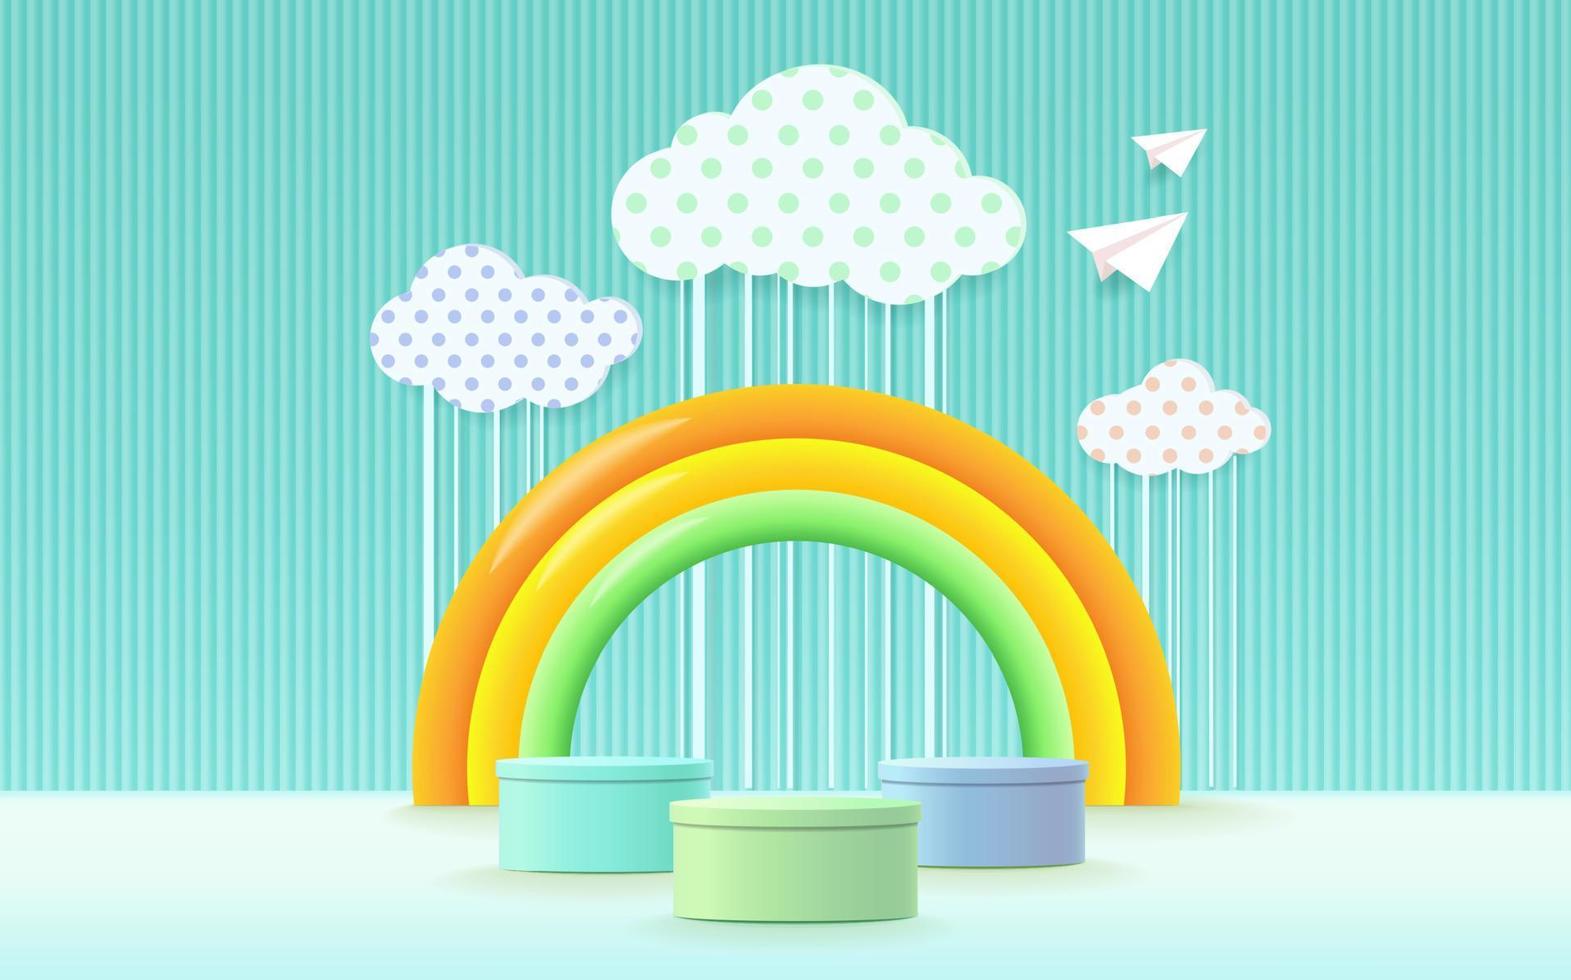 Podio de renderizado 3d, fondo pastel colorido, nubes y clima con espacio vacío para niños o productos para bebés vector